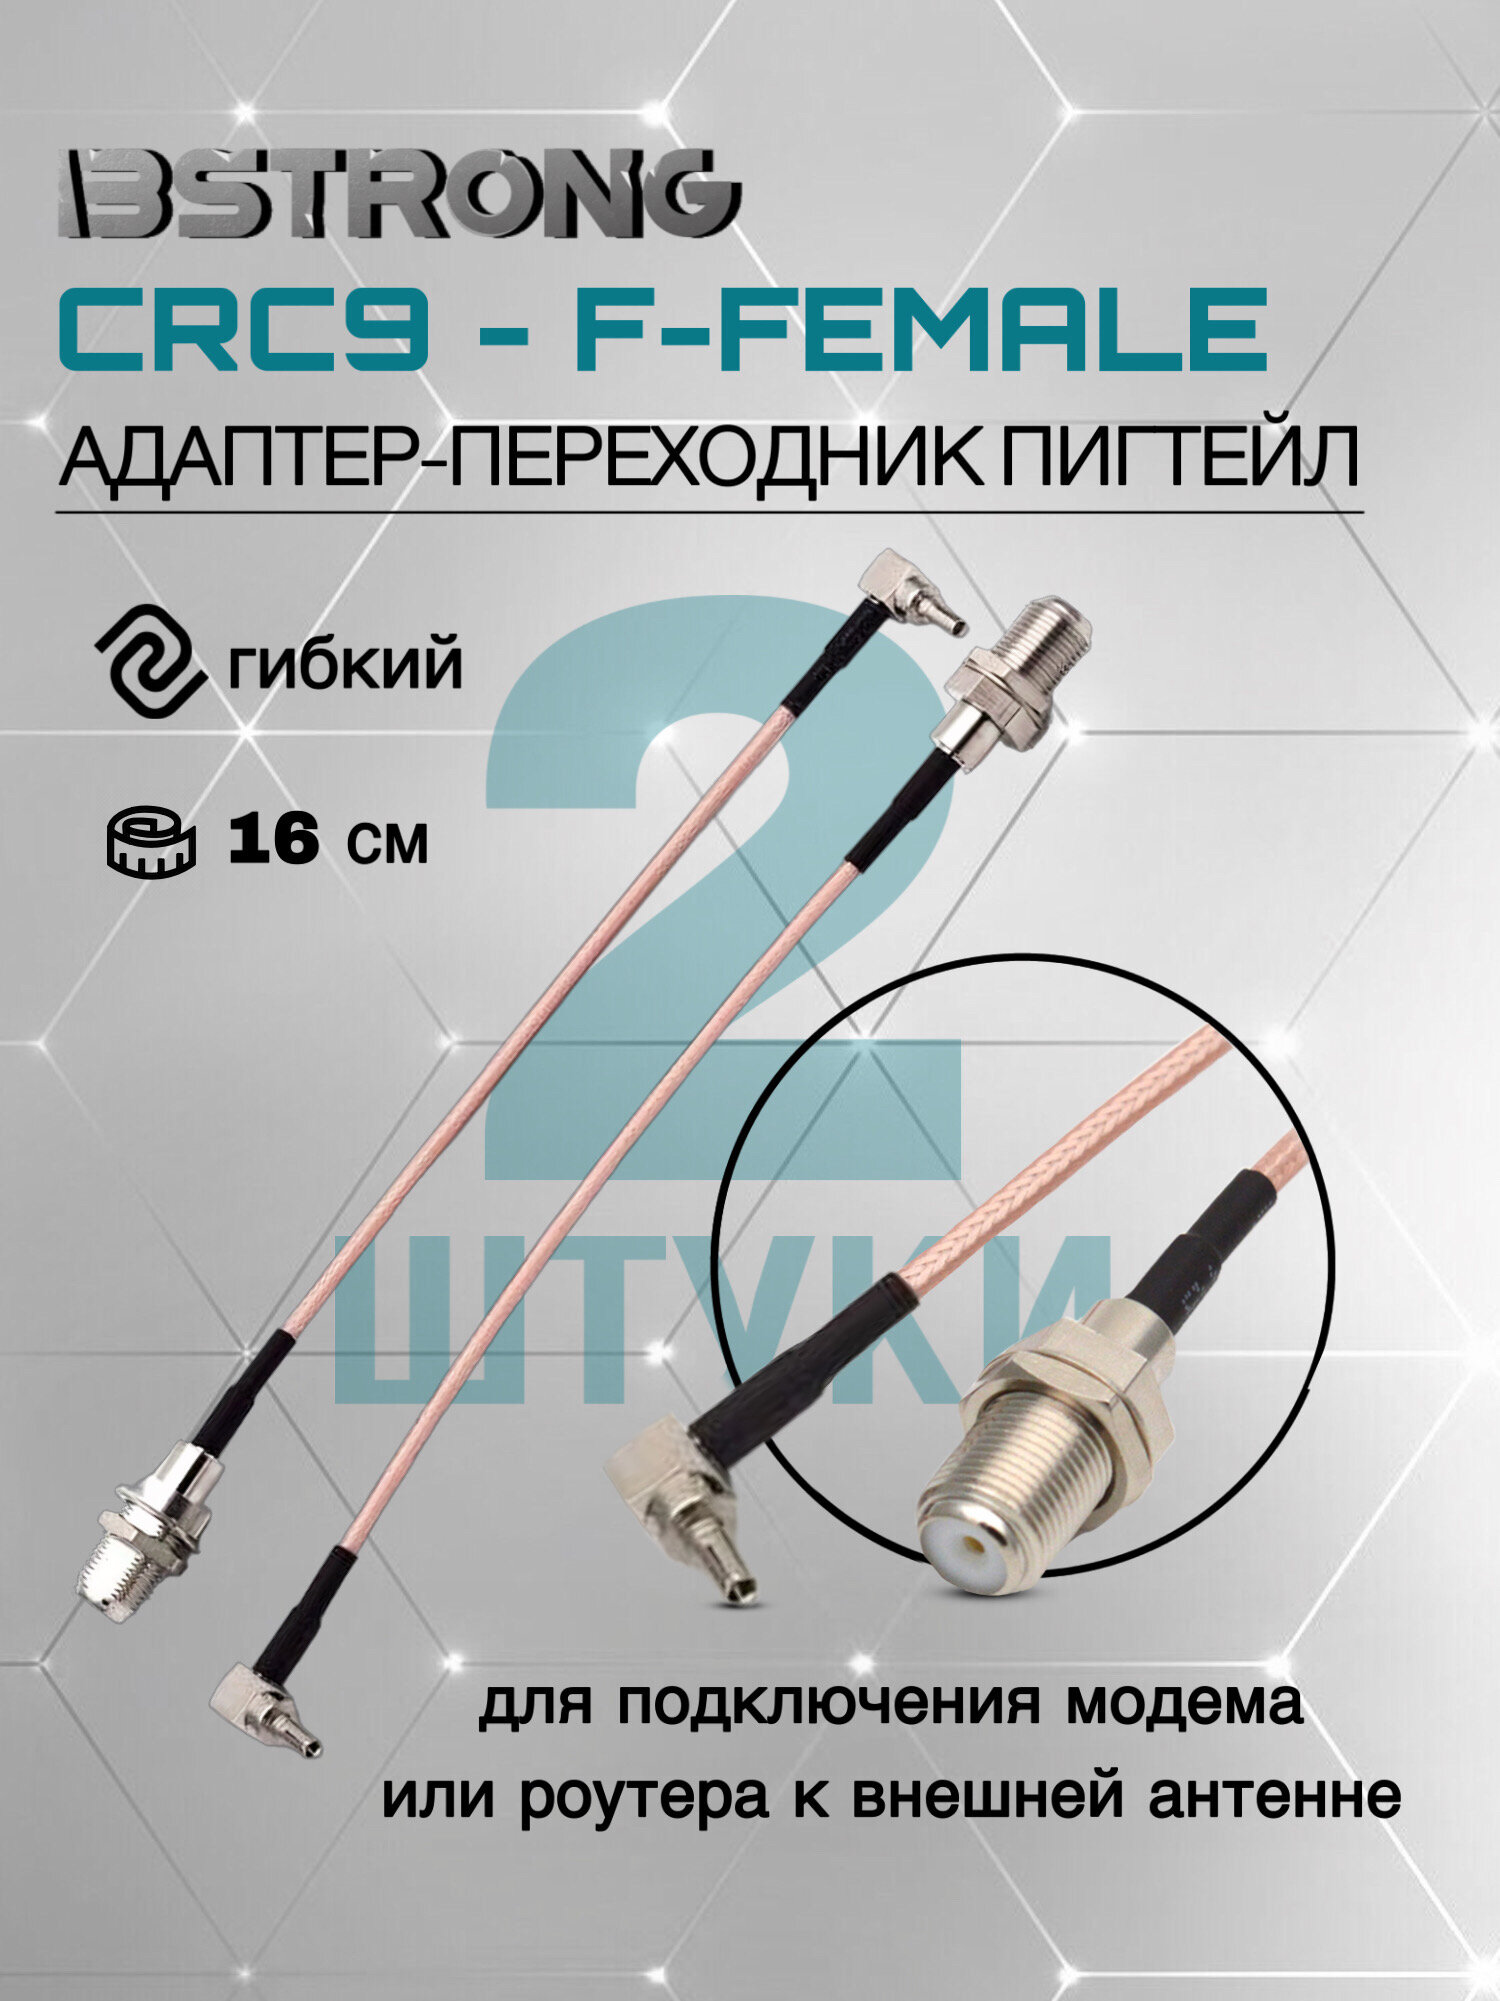 Комплект адаптер-переходник Пигтейл CRC9-F-female (2 шт.) 15 см для подключения модема роутера к внешней антенне